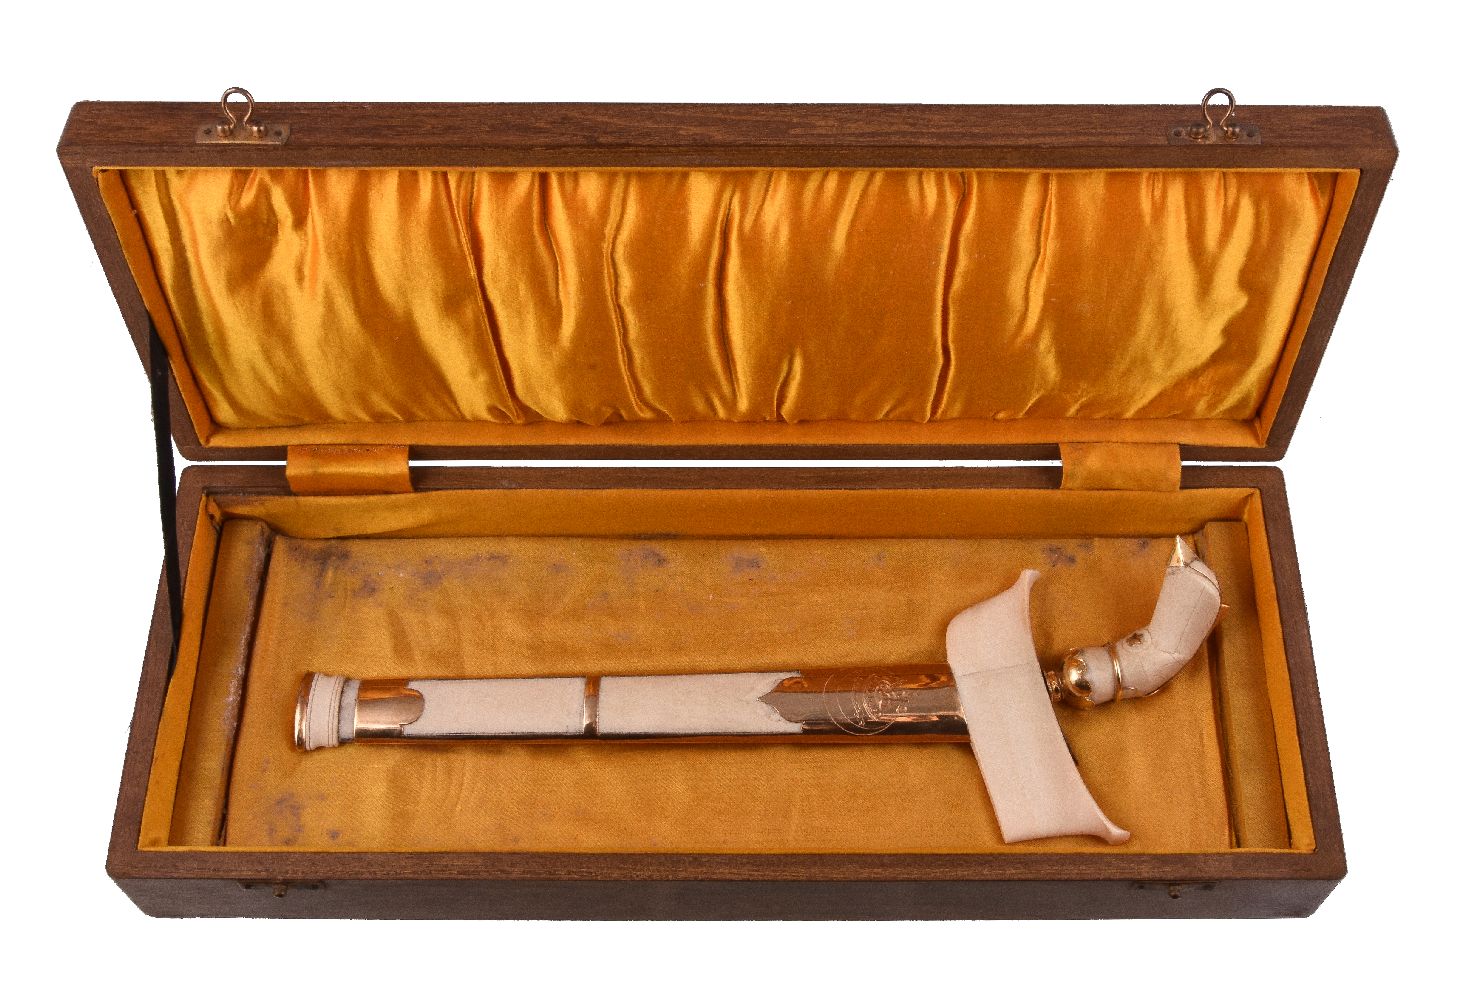 ϒ A Malayan gold coloured mounted ivory presentation kris, early 20th century - Image 2 of 2